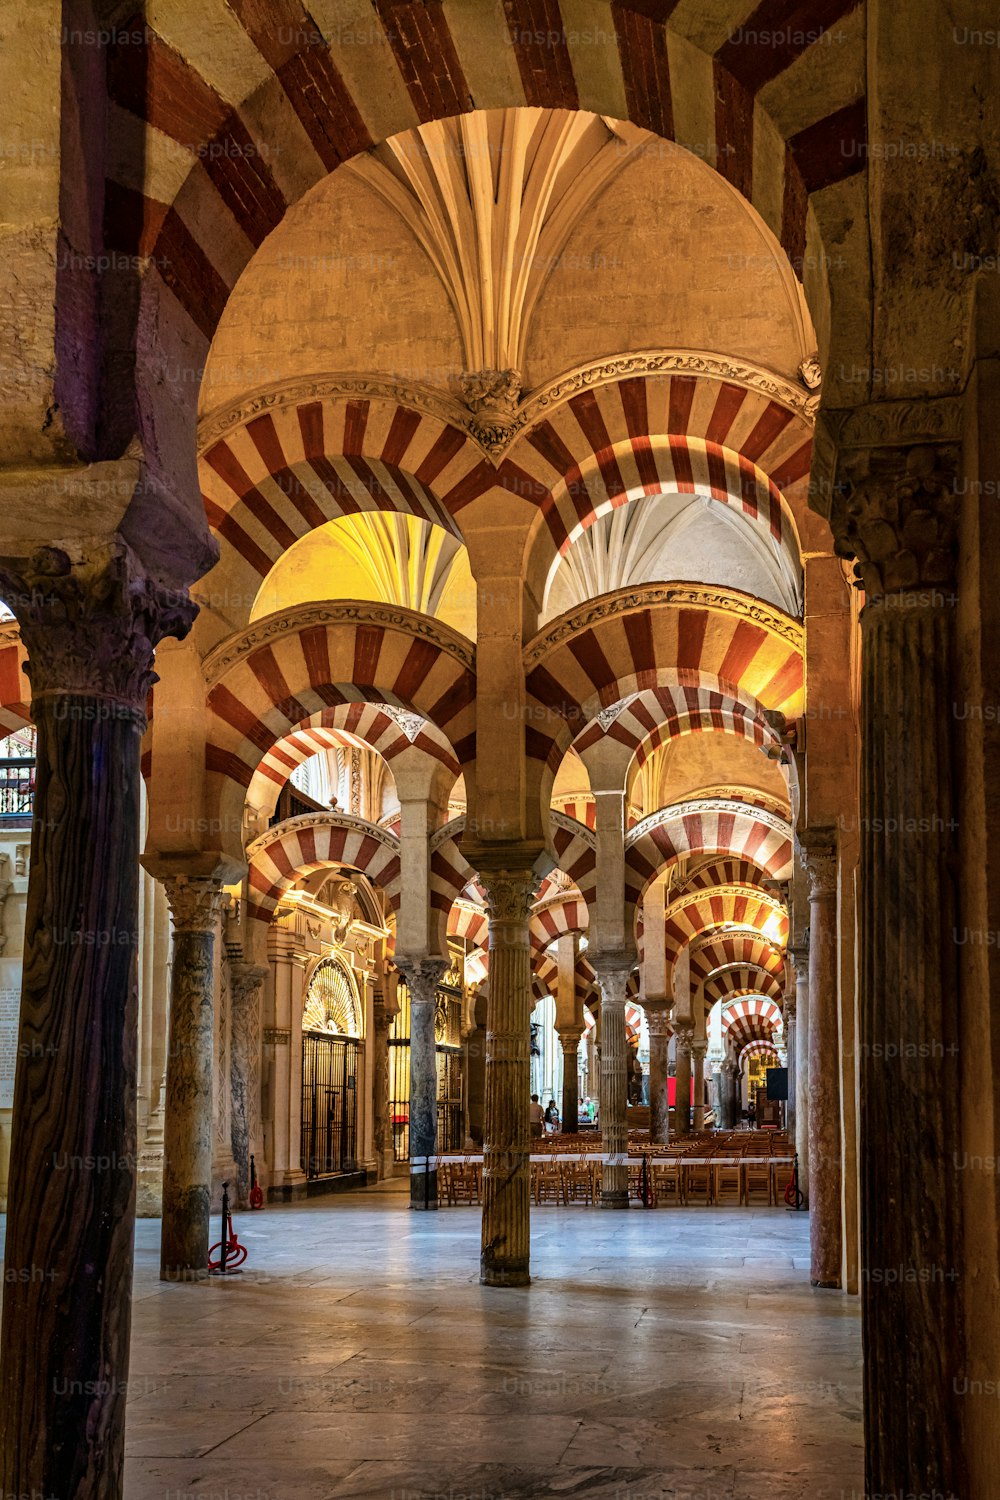 스페인 안달루시아의 코르도바에 있는 메스키타 대성당 또는 그레이트 모스크 내부의 무어 건축물